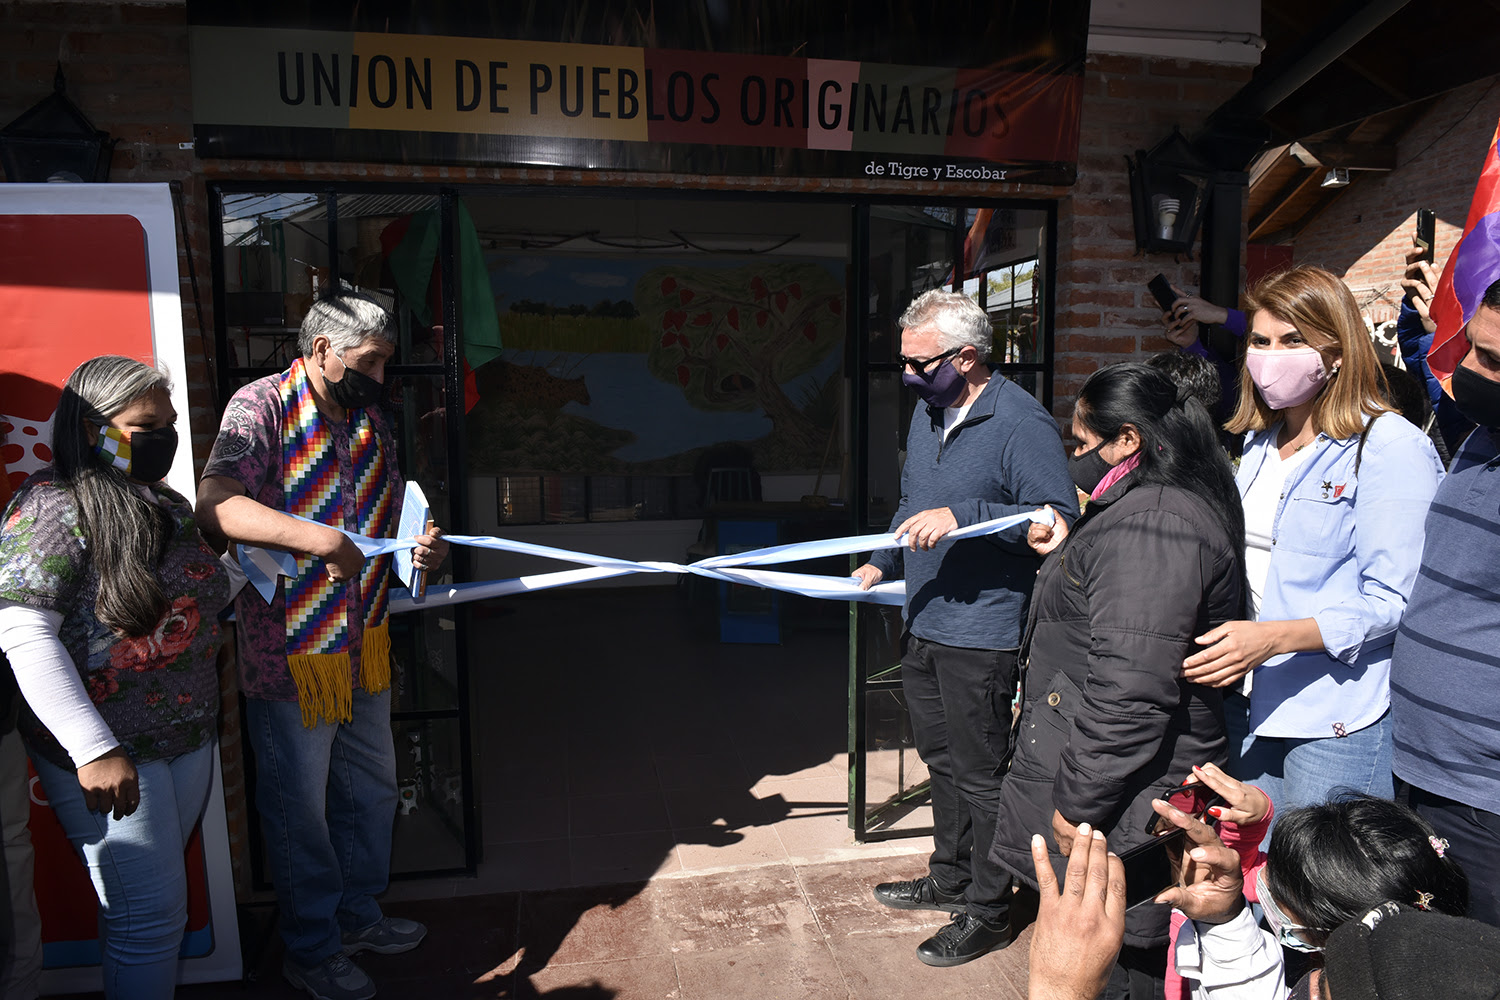 Puerto de Frutos: Julio y Gisela Zamora inauguraron el nuevo local comercial de la Unión de Pueblos Originarios de Tigre y Escobar